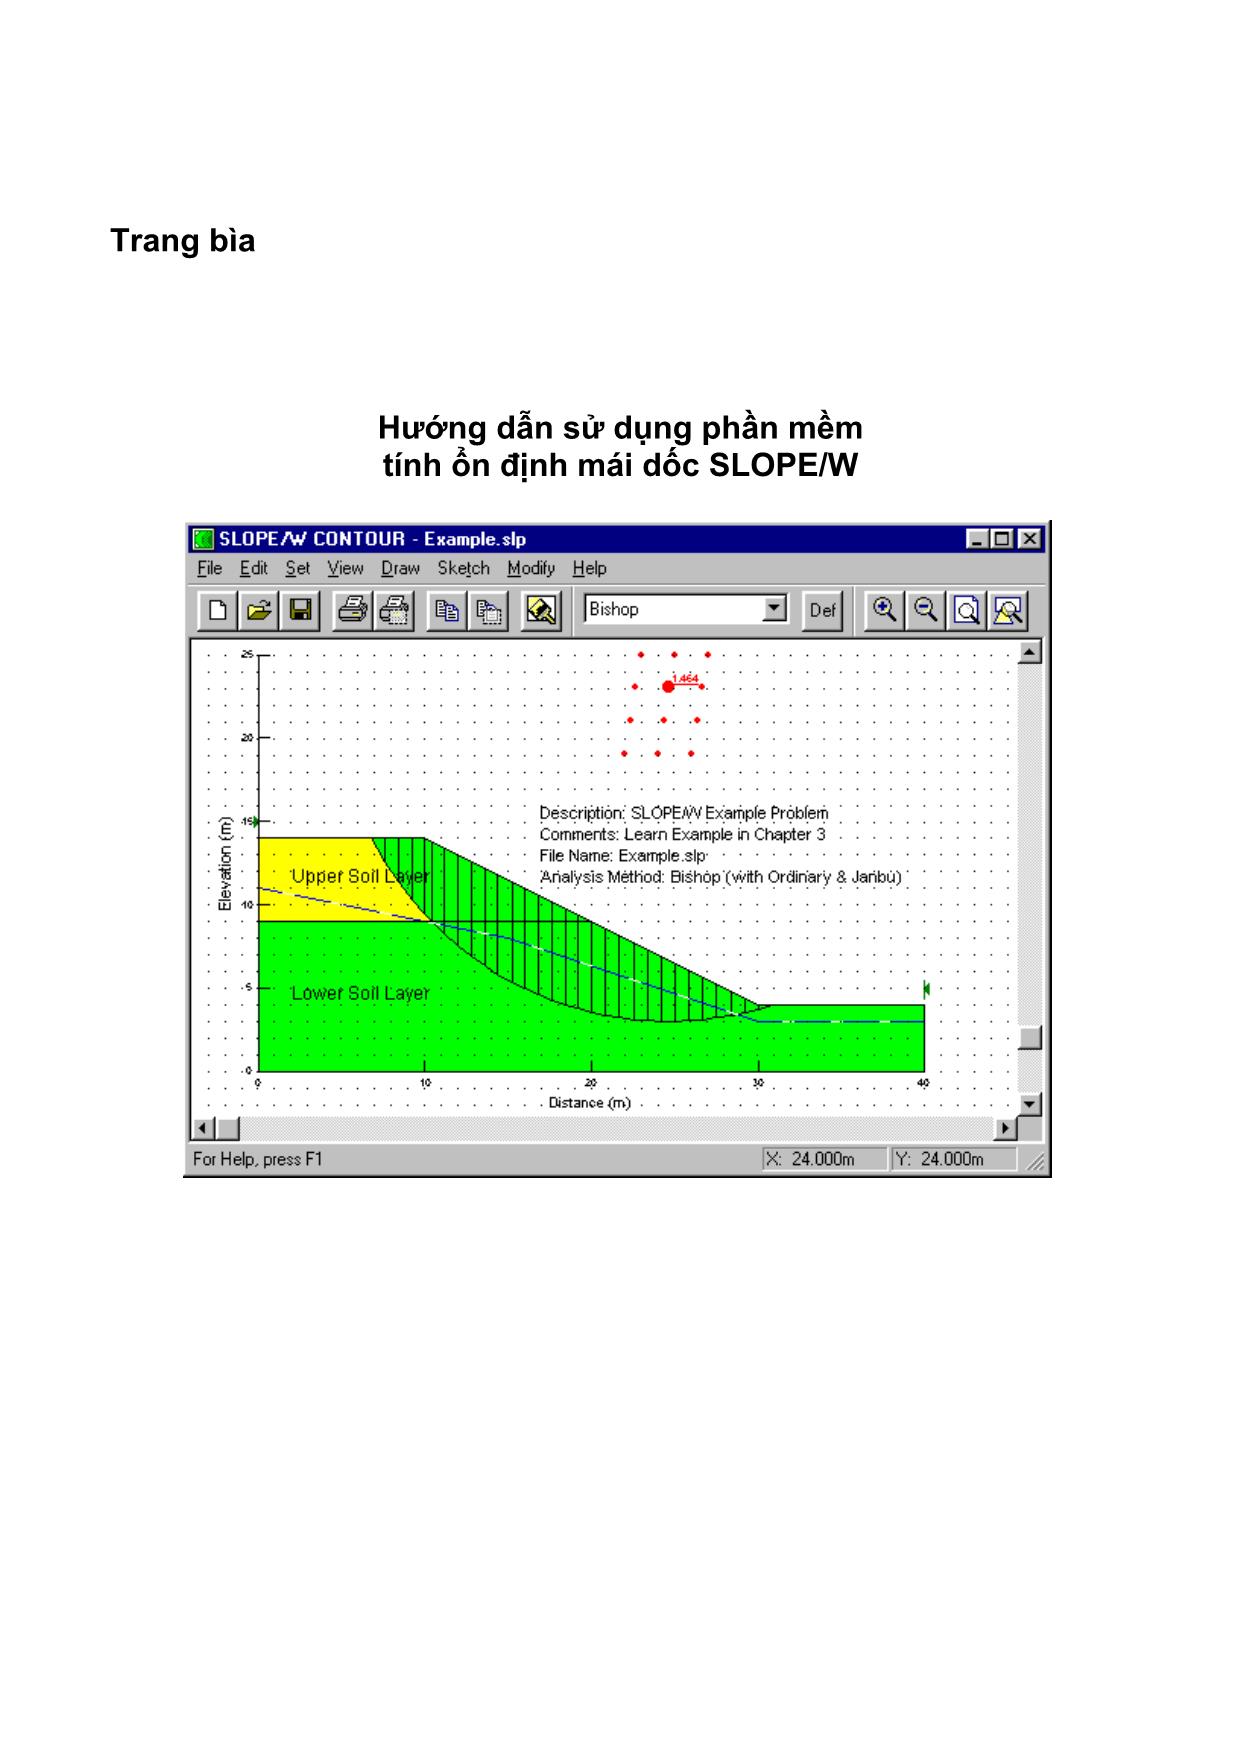 Hướng dẫn sử dụng phần mềm tính ổn định mái dốc Slope/W trang 1